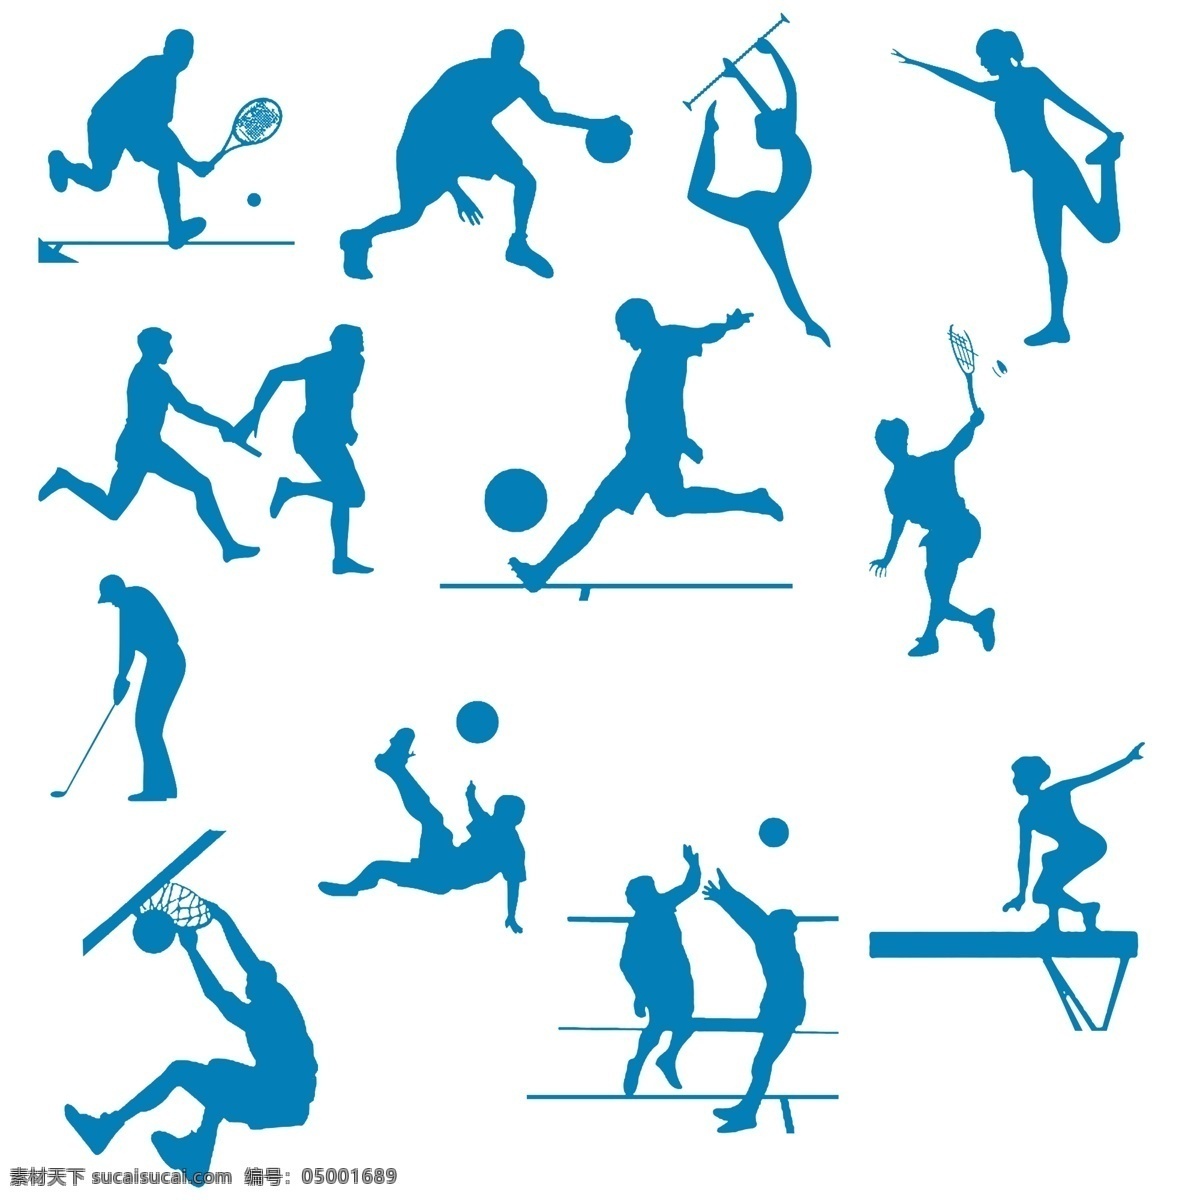 体育项目 体育运动 体育剪纸 足球 排球 篮球 接力 平衡木 体操 高尔夫 羽毛球 网球 分层 源文件